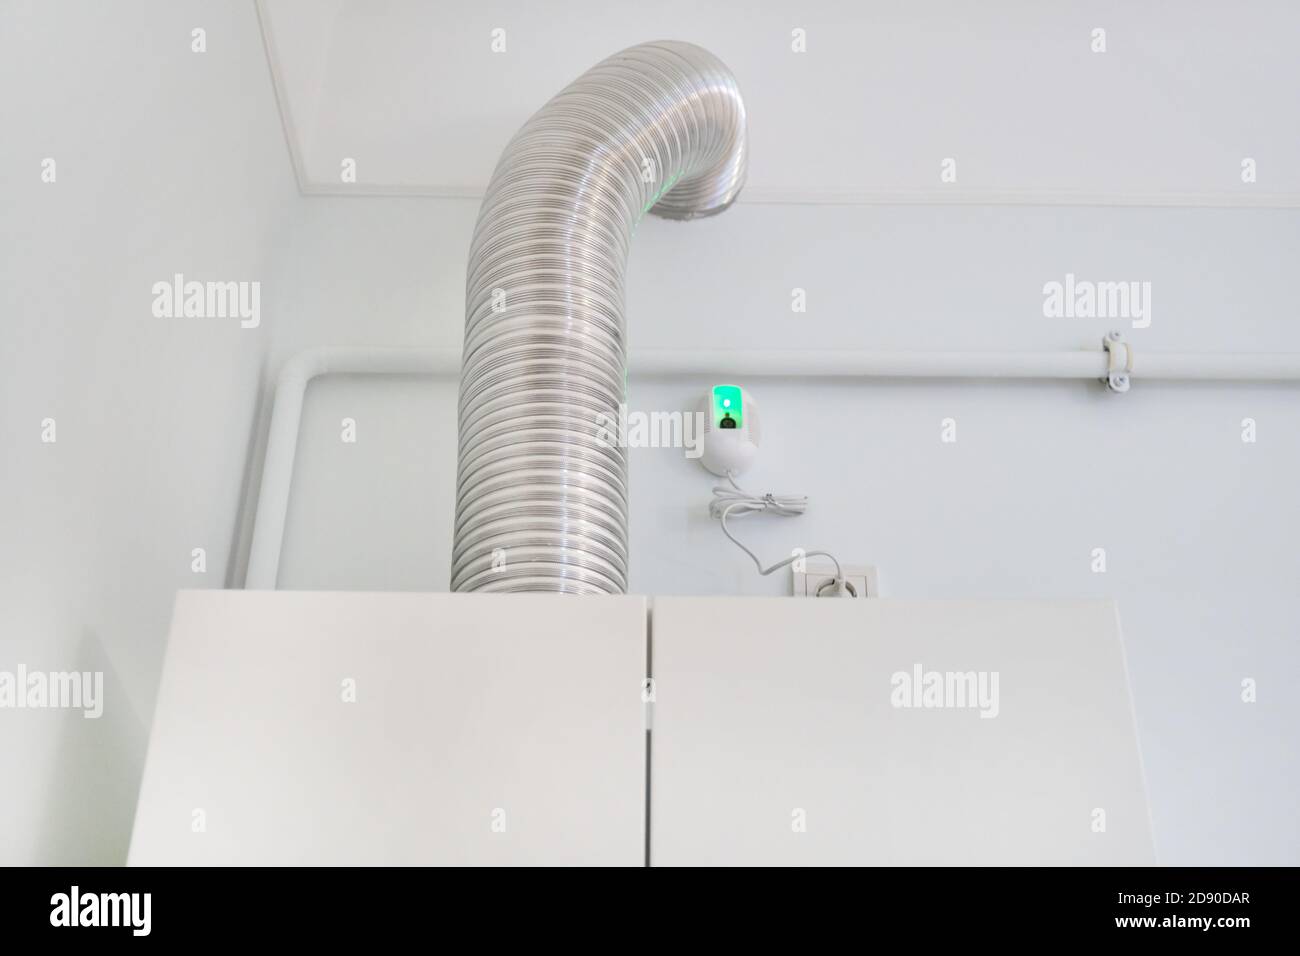 Gasheizung in der Wohnung, Kommunikationsrohre Stockfotografie - Alamy